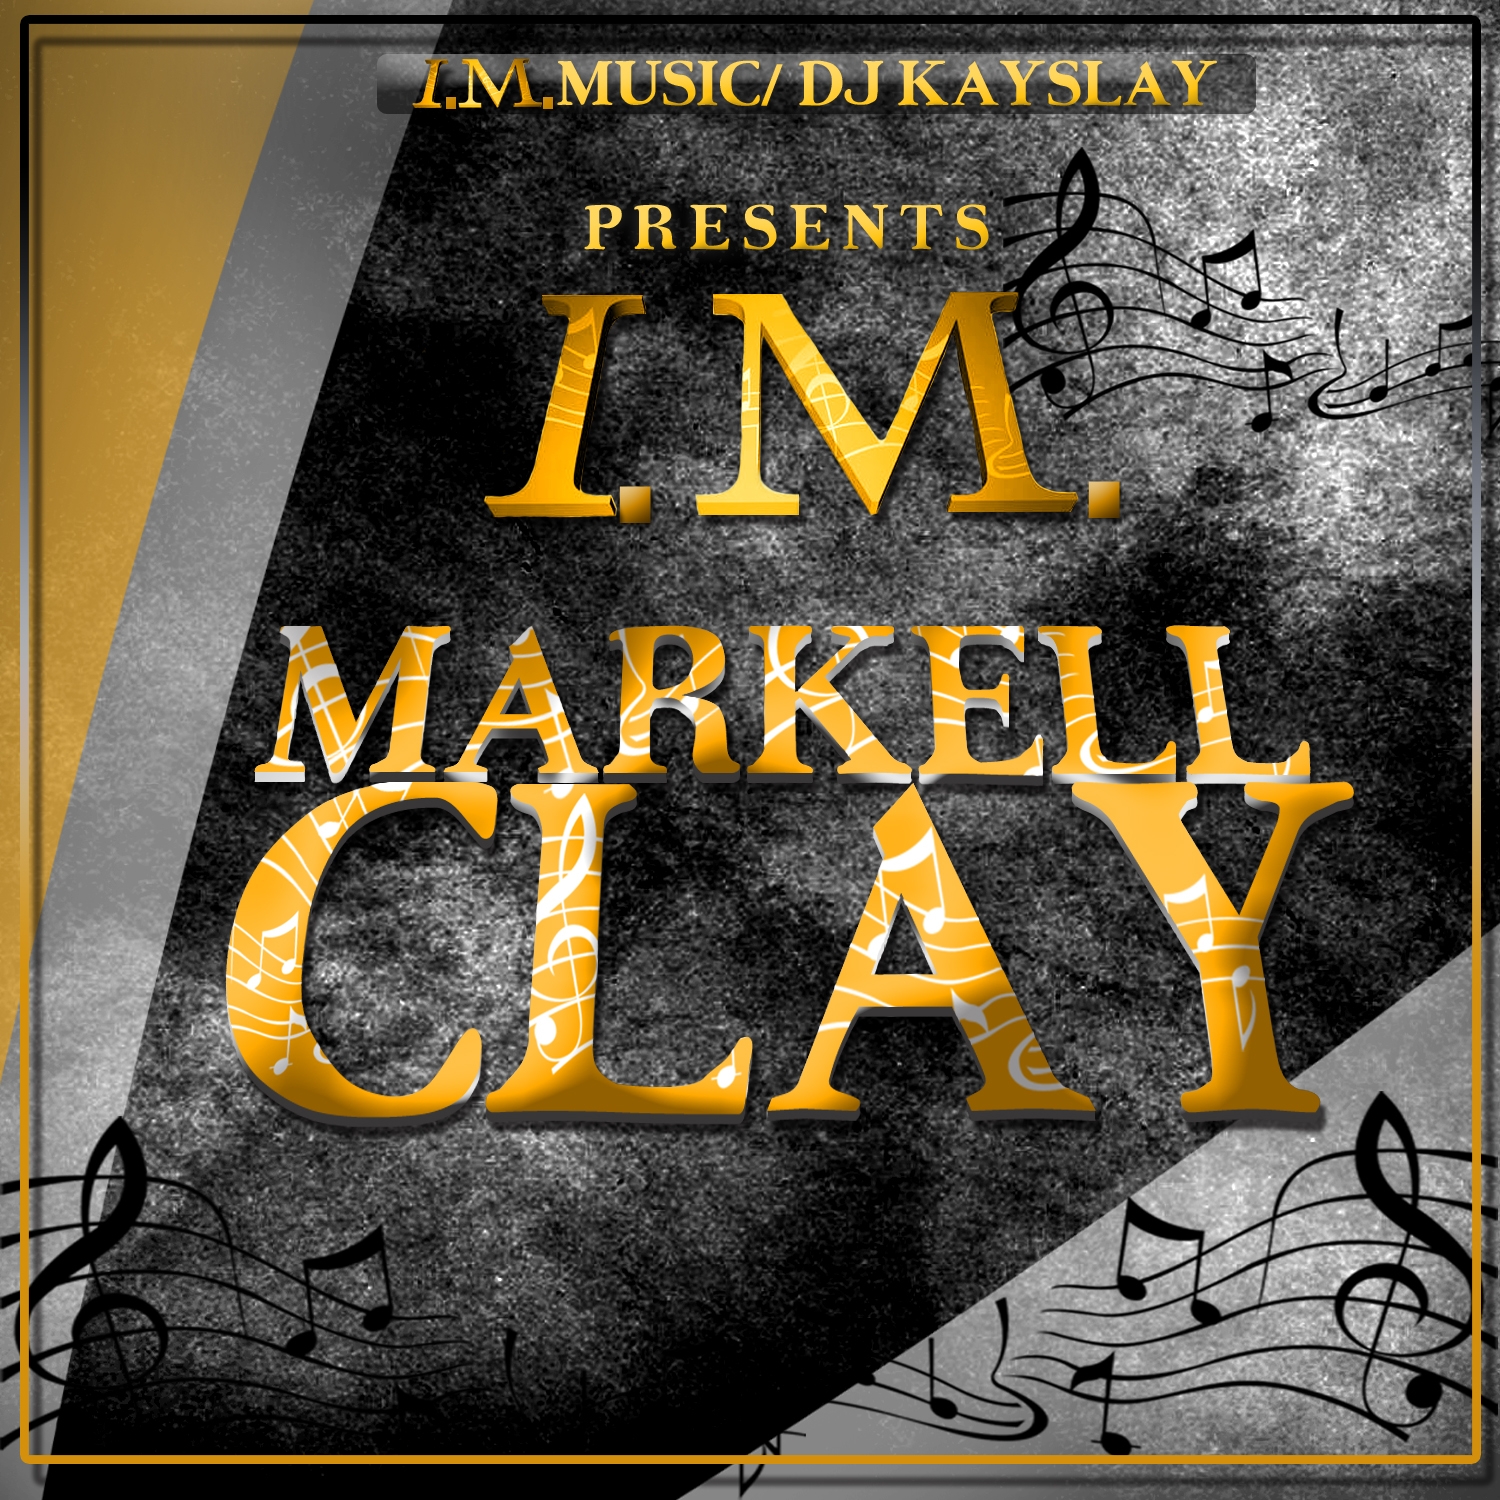 I.M. Markell Clay